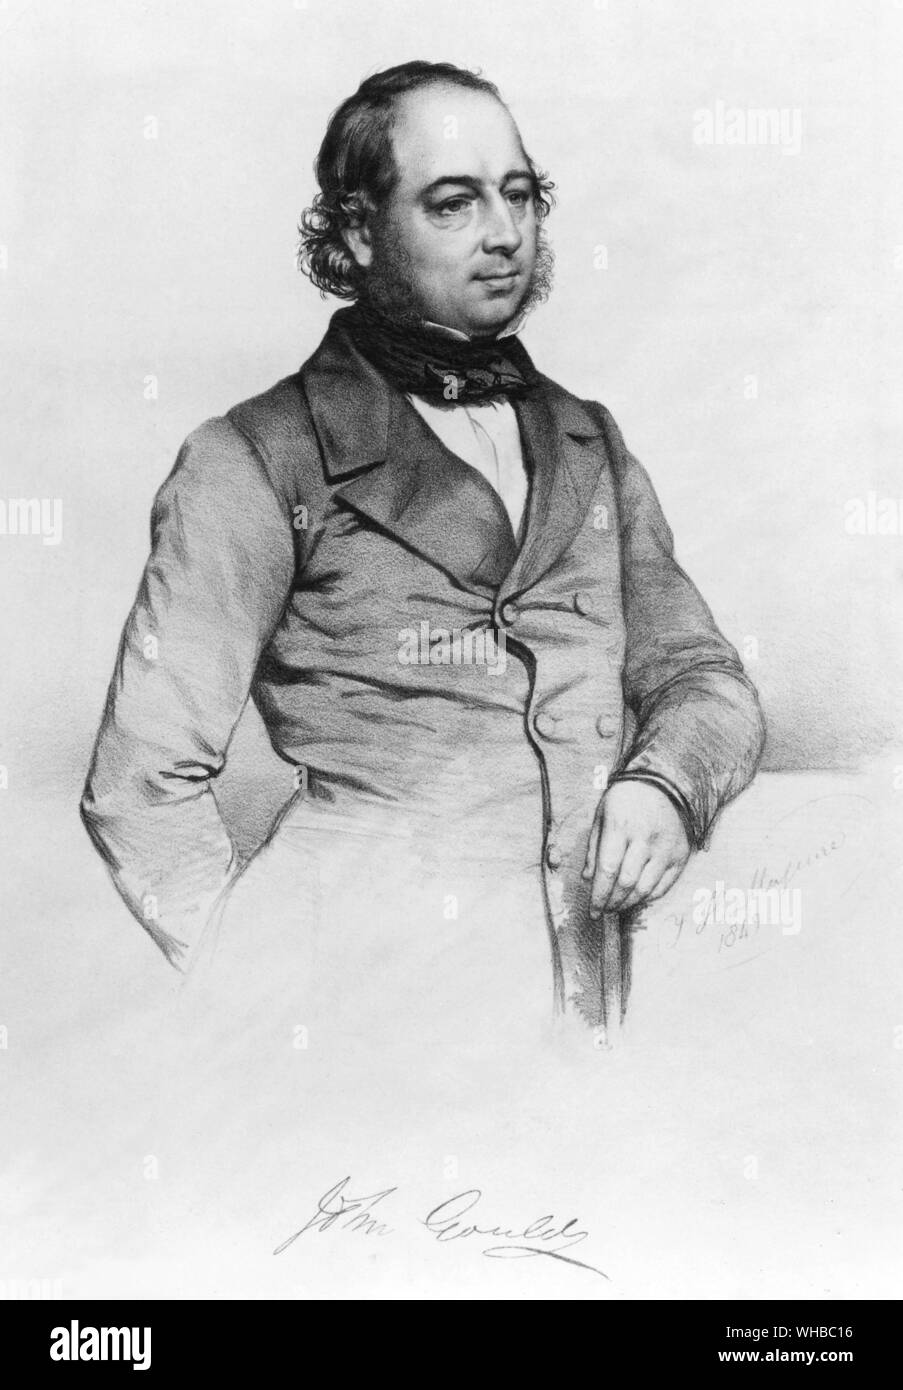 John Gould (14 settembre 1804 - 3 febbraio 1881) era un ornitologo inglese. Il Gould League in Australia è stato chiamato dopo di lui. La sua identificazione di Charles Darwin finches è stato determinante nello sviluppo della teoria dell'origine delle specie.. Foto Stock